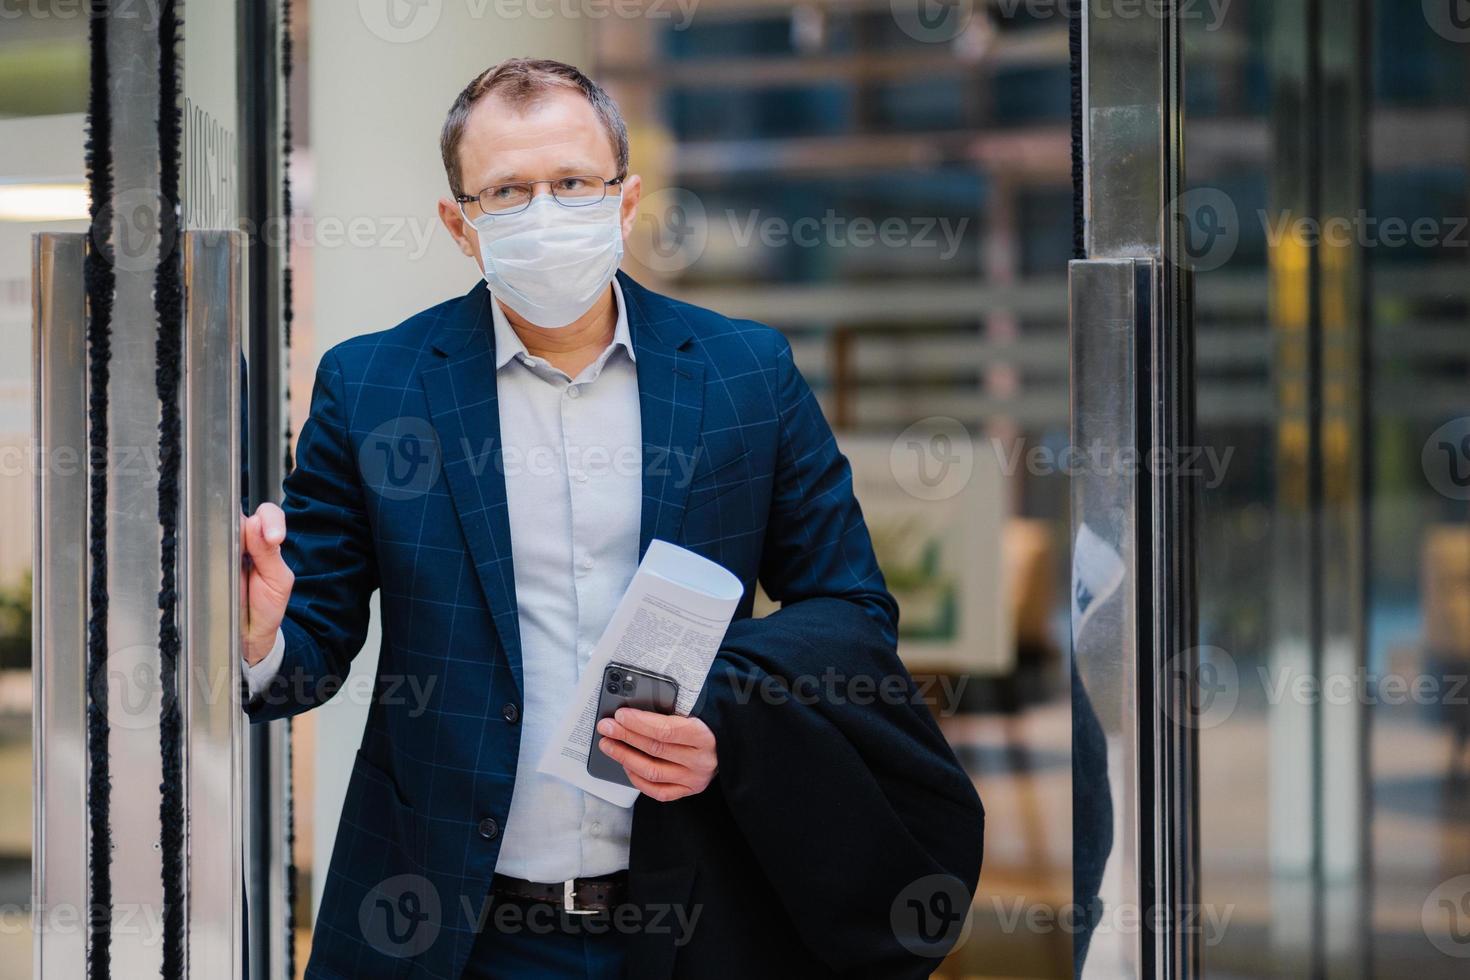 covid-19, concept de coronavirus pandémique. l'employé de bureau quitte le travail, porte un masque médical pour la propagation des maladies infectieuses, habillé formellement, tient un journal et un smartphone. notion de santé et de sécurité photo